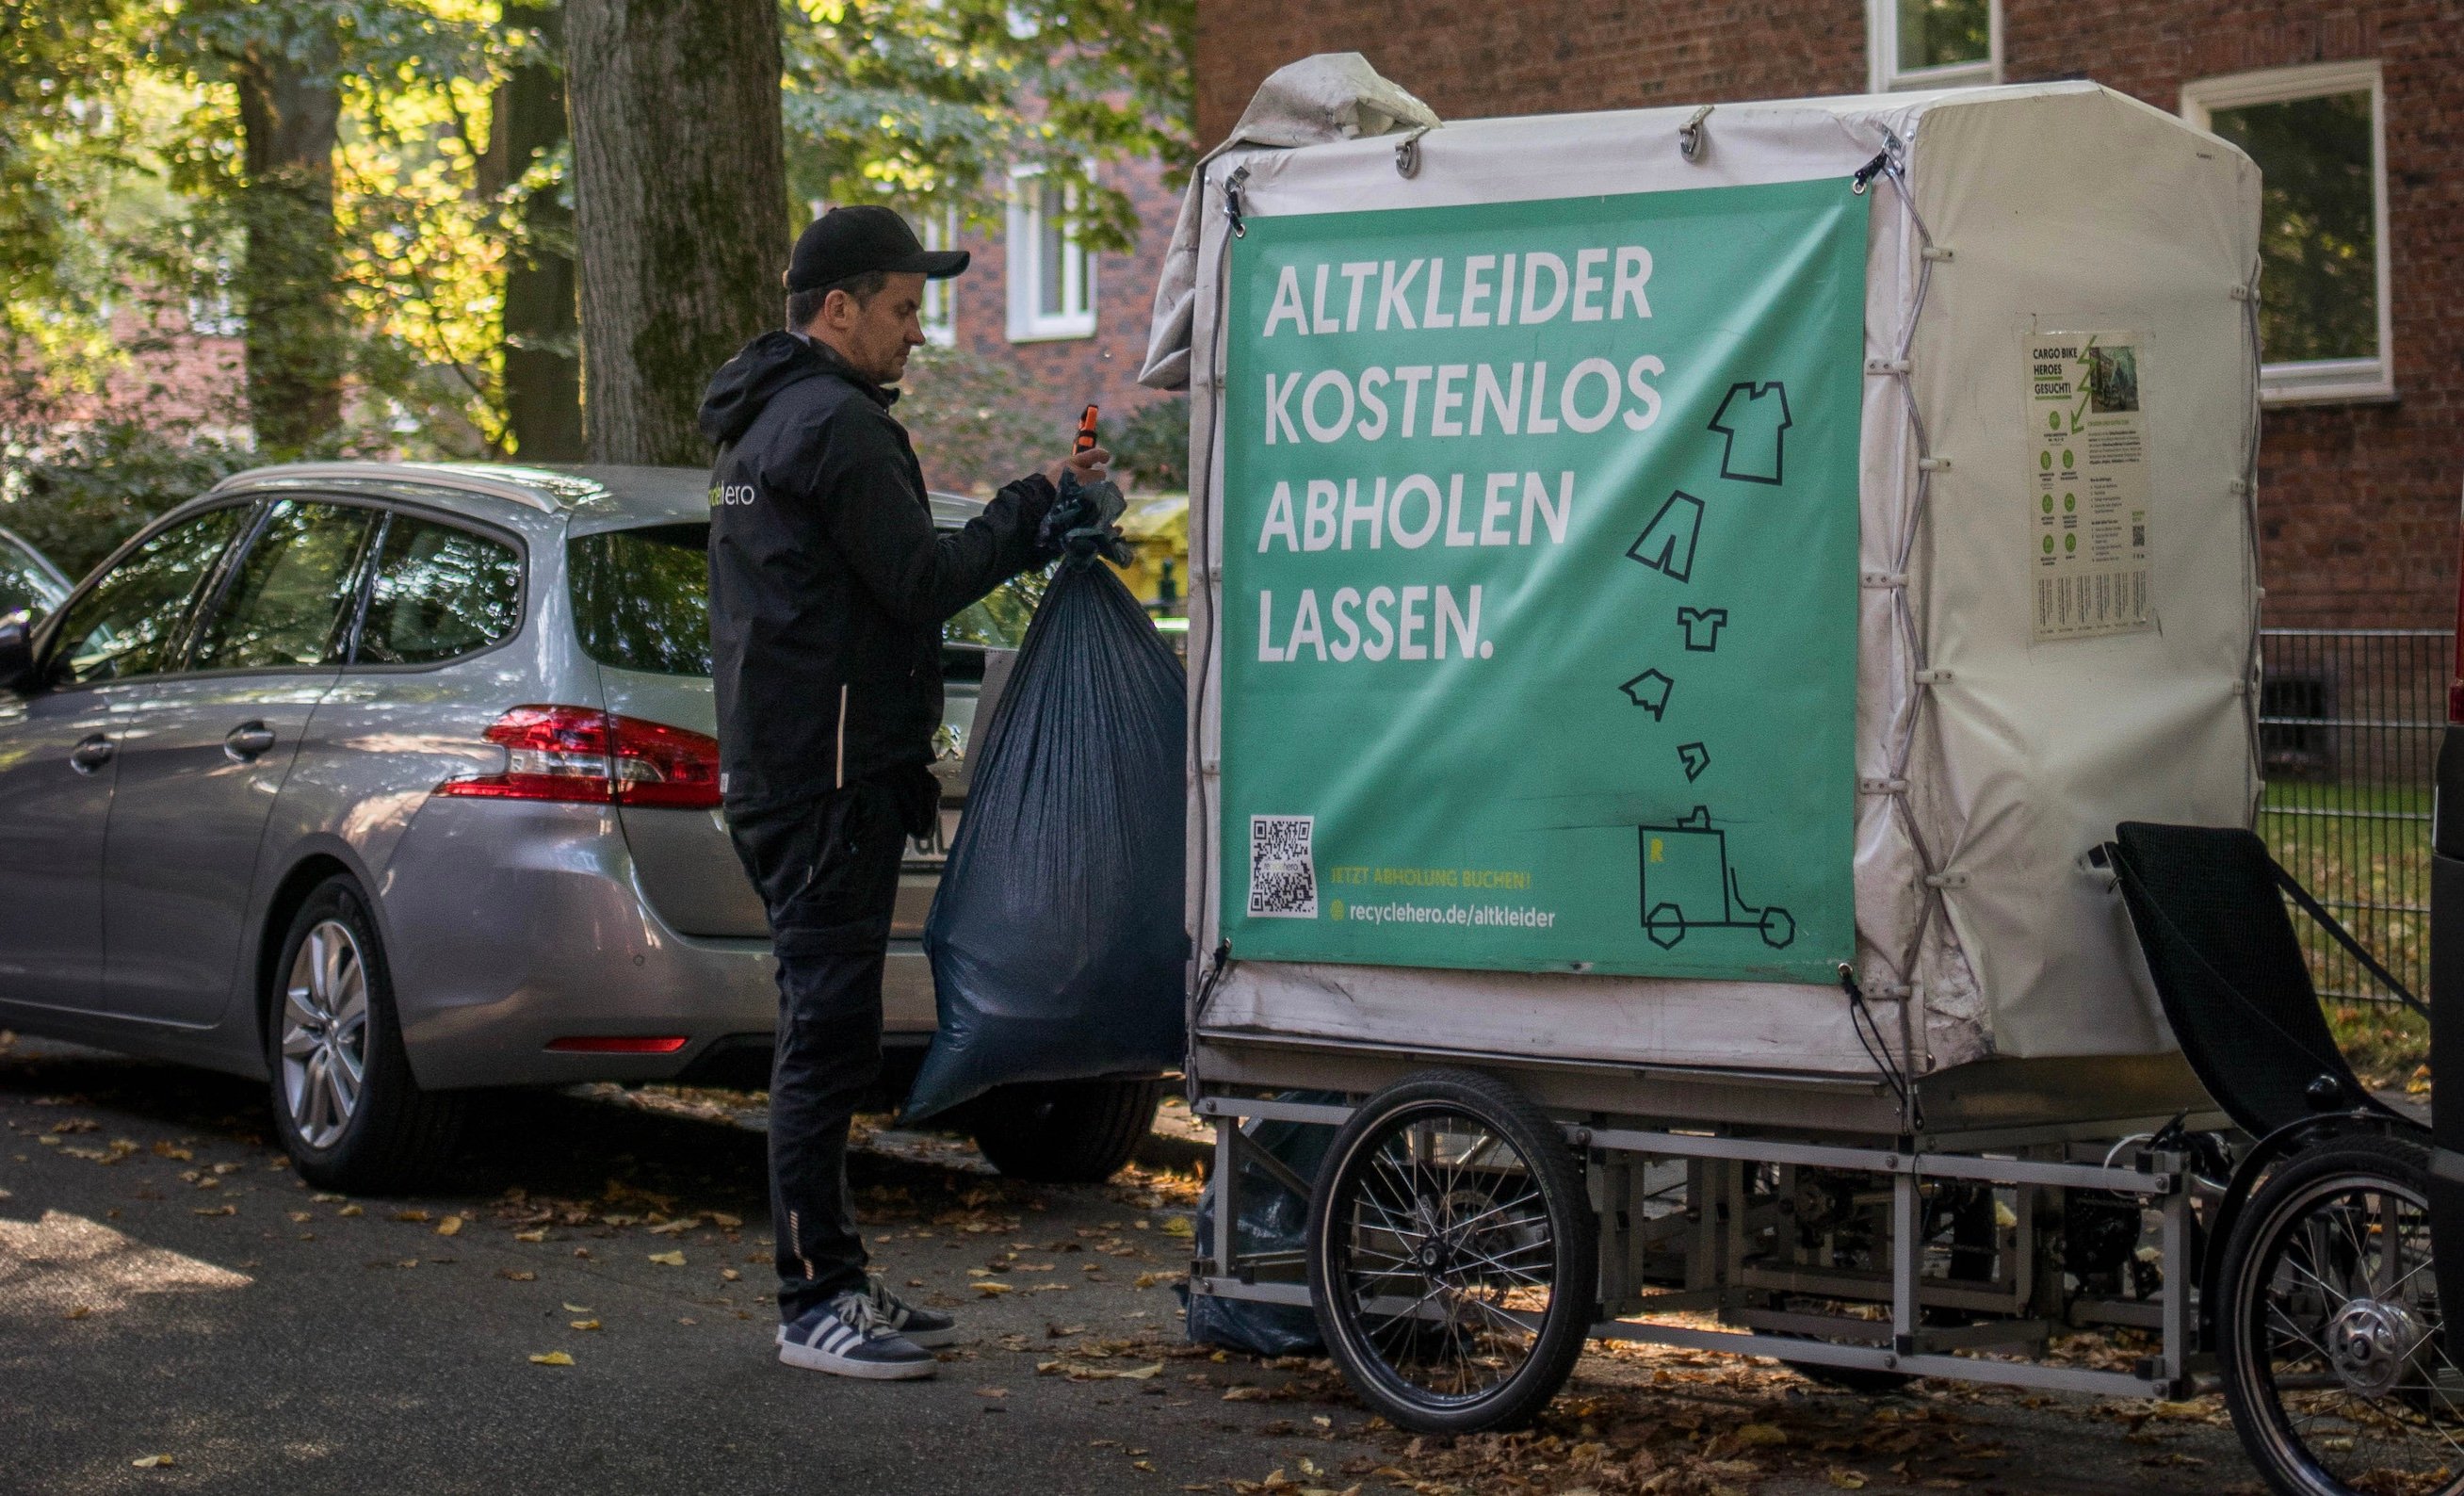 recyclehero holt auf dem Lastenrad deine Altkleider ab.